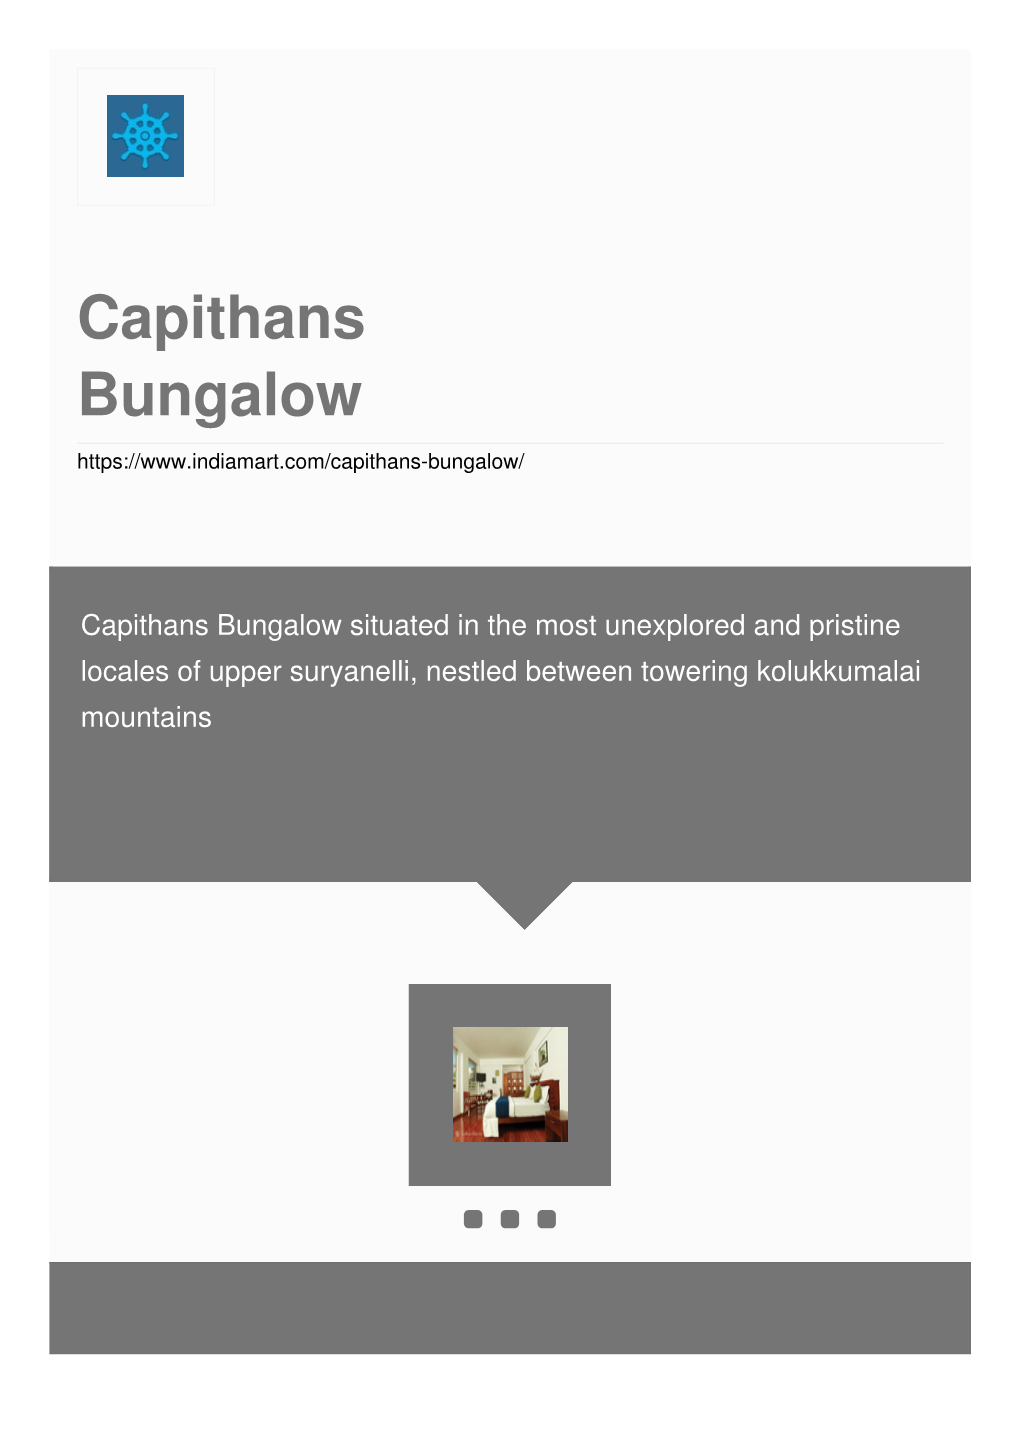 Capithans Bungalow